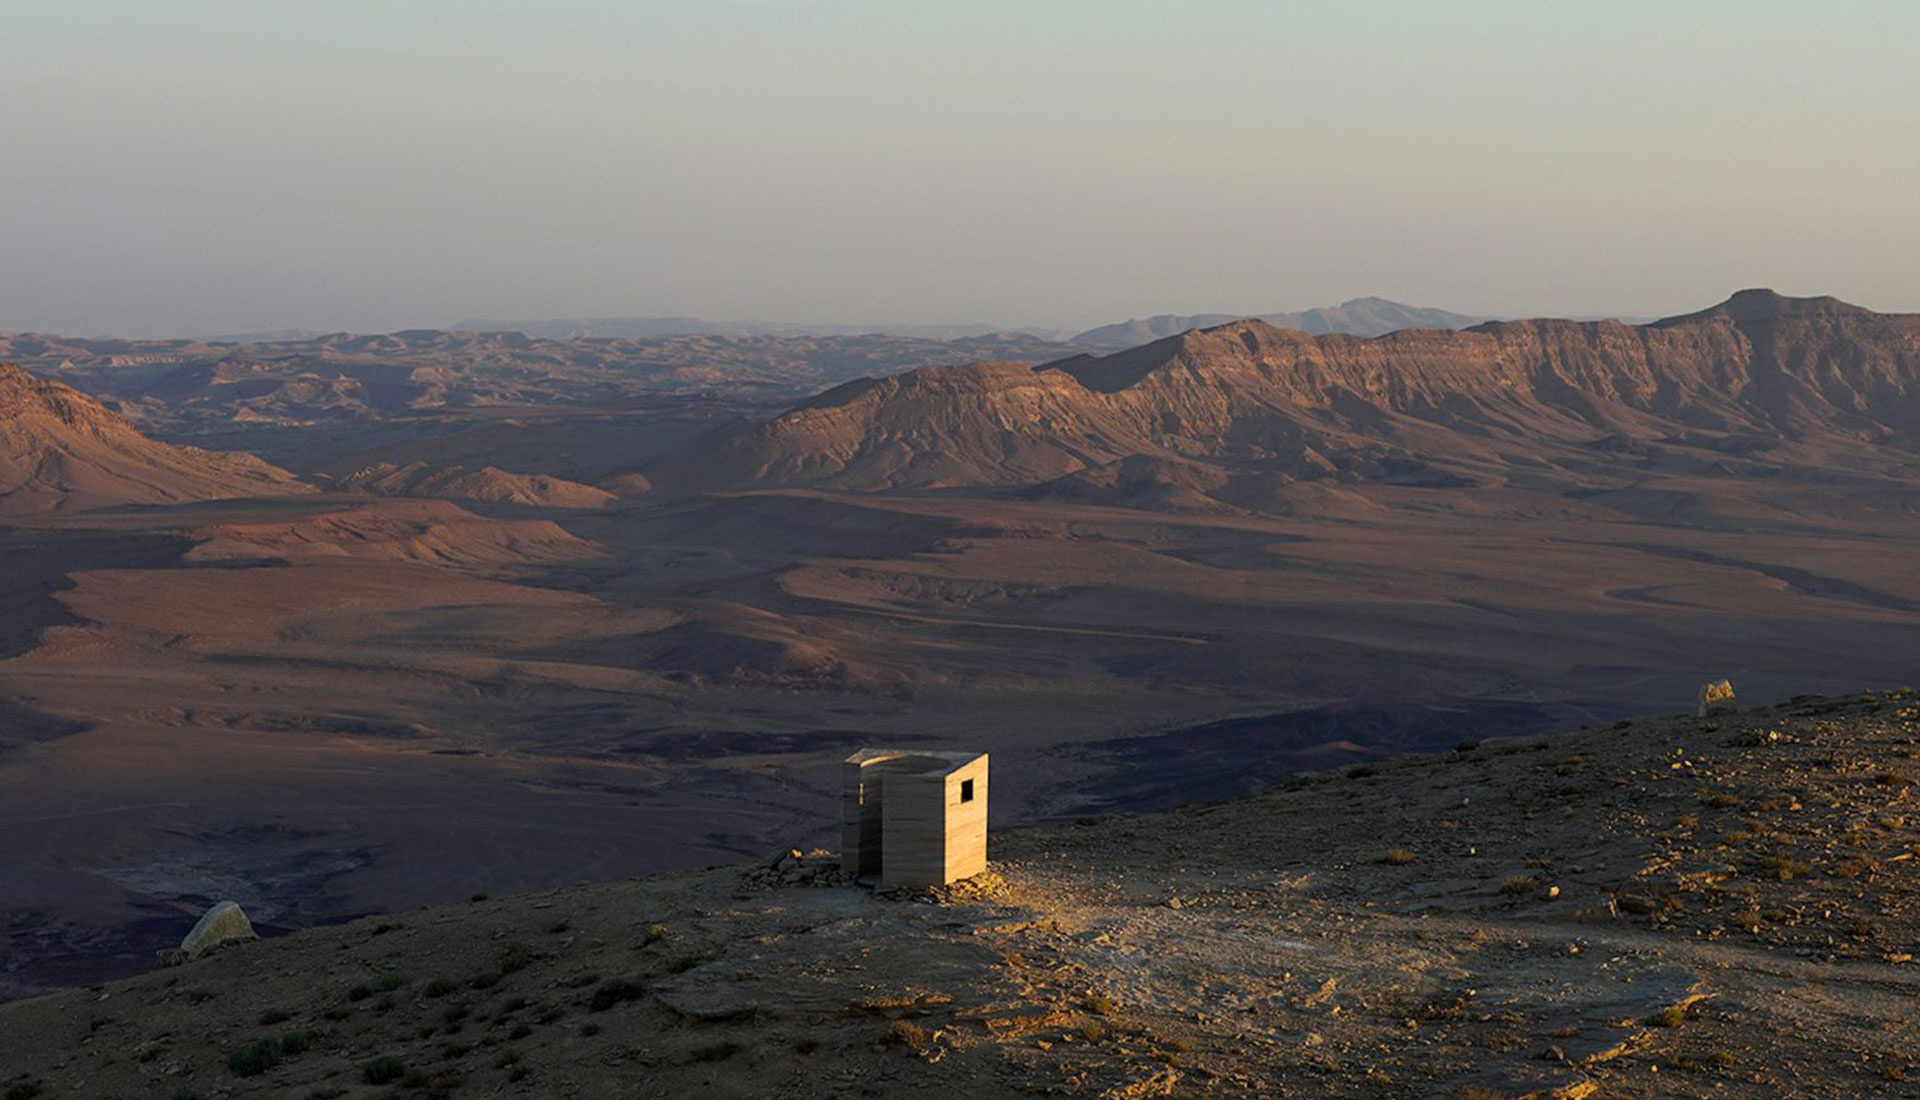 Gitai Architects: земляной павильон в пустыне Негев